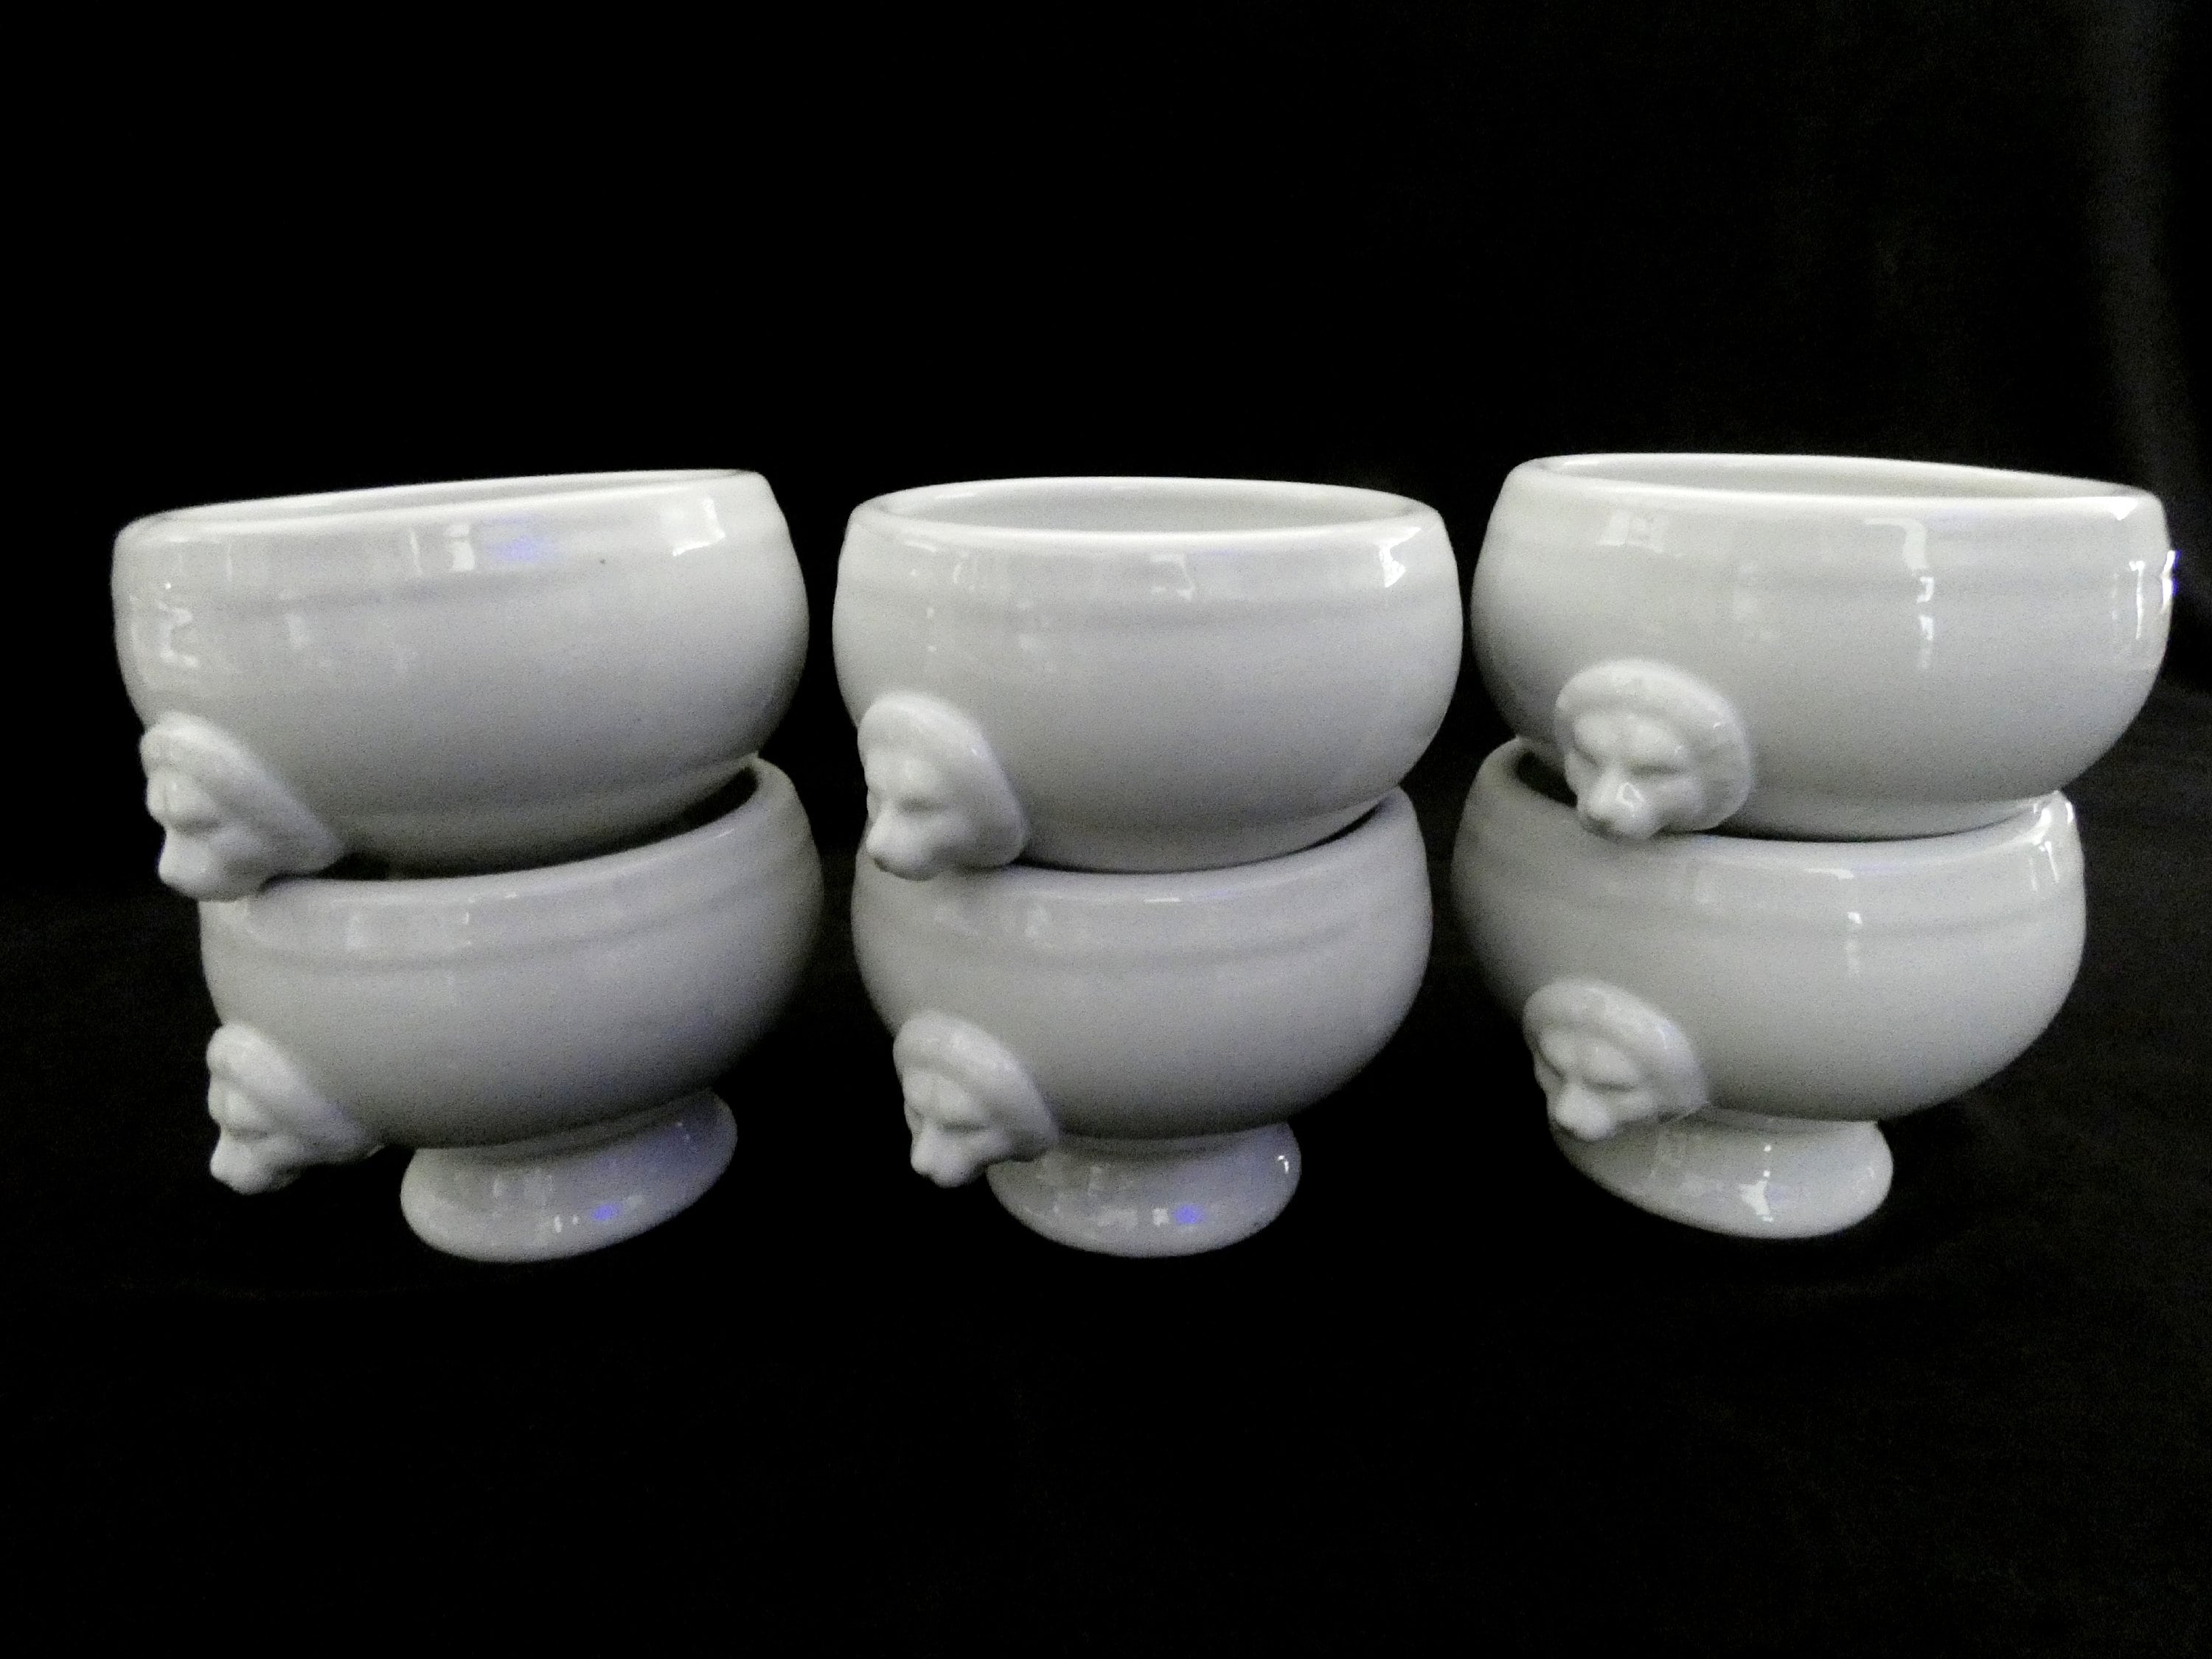 LYON Soup Bowl with Handles - White Porcelain, 14oz